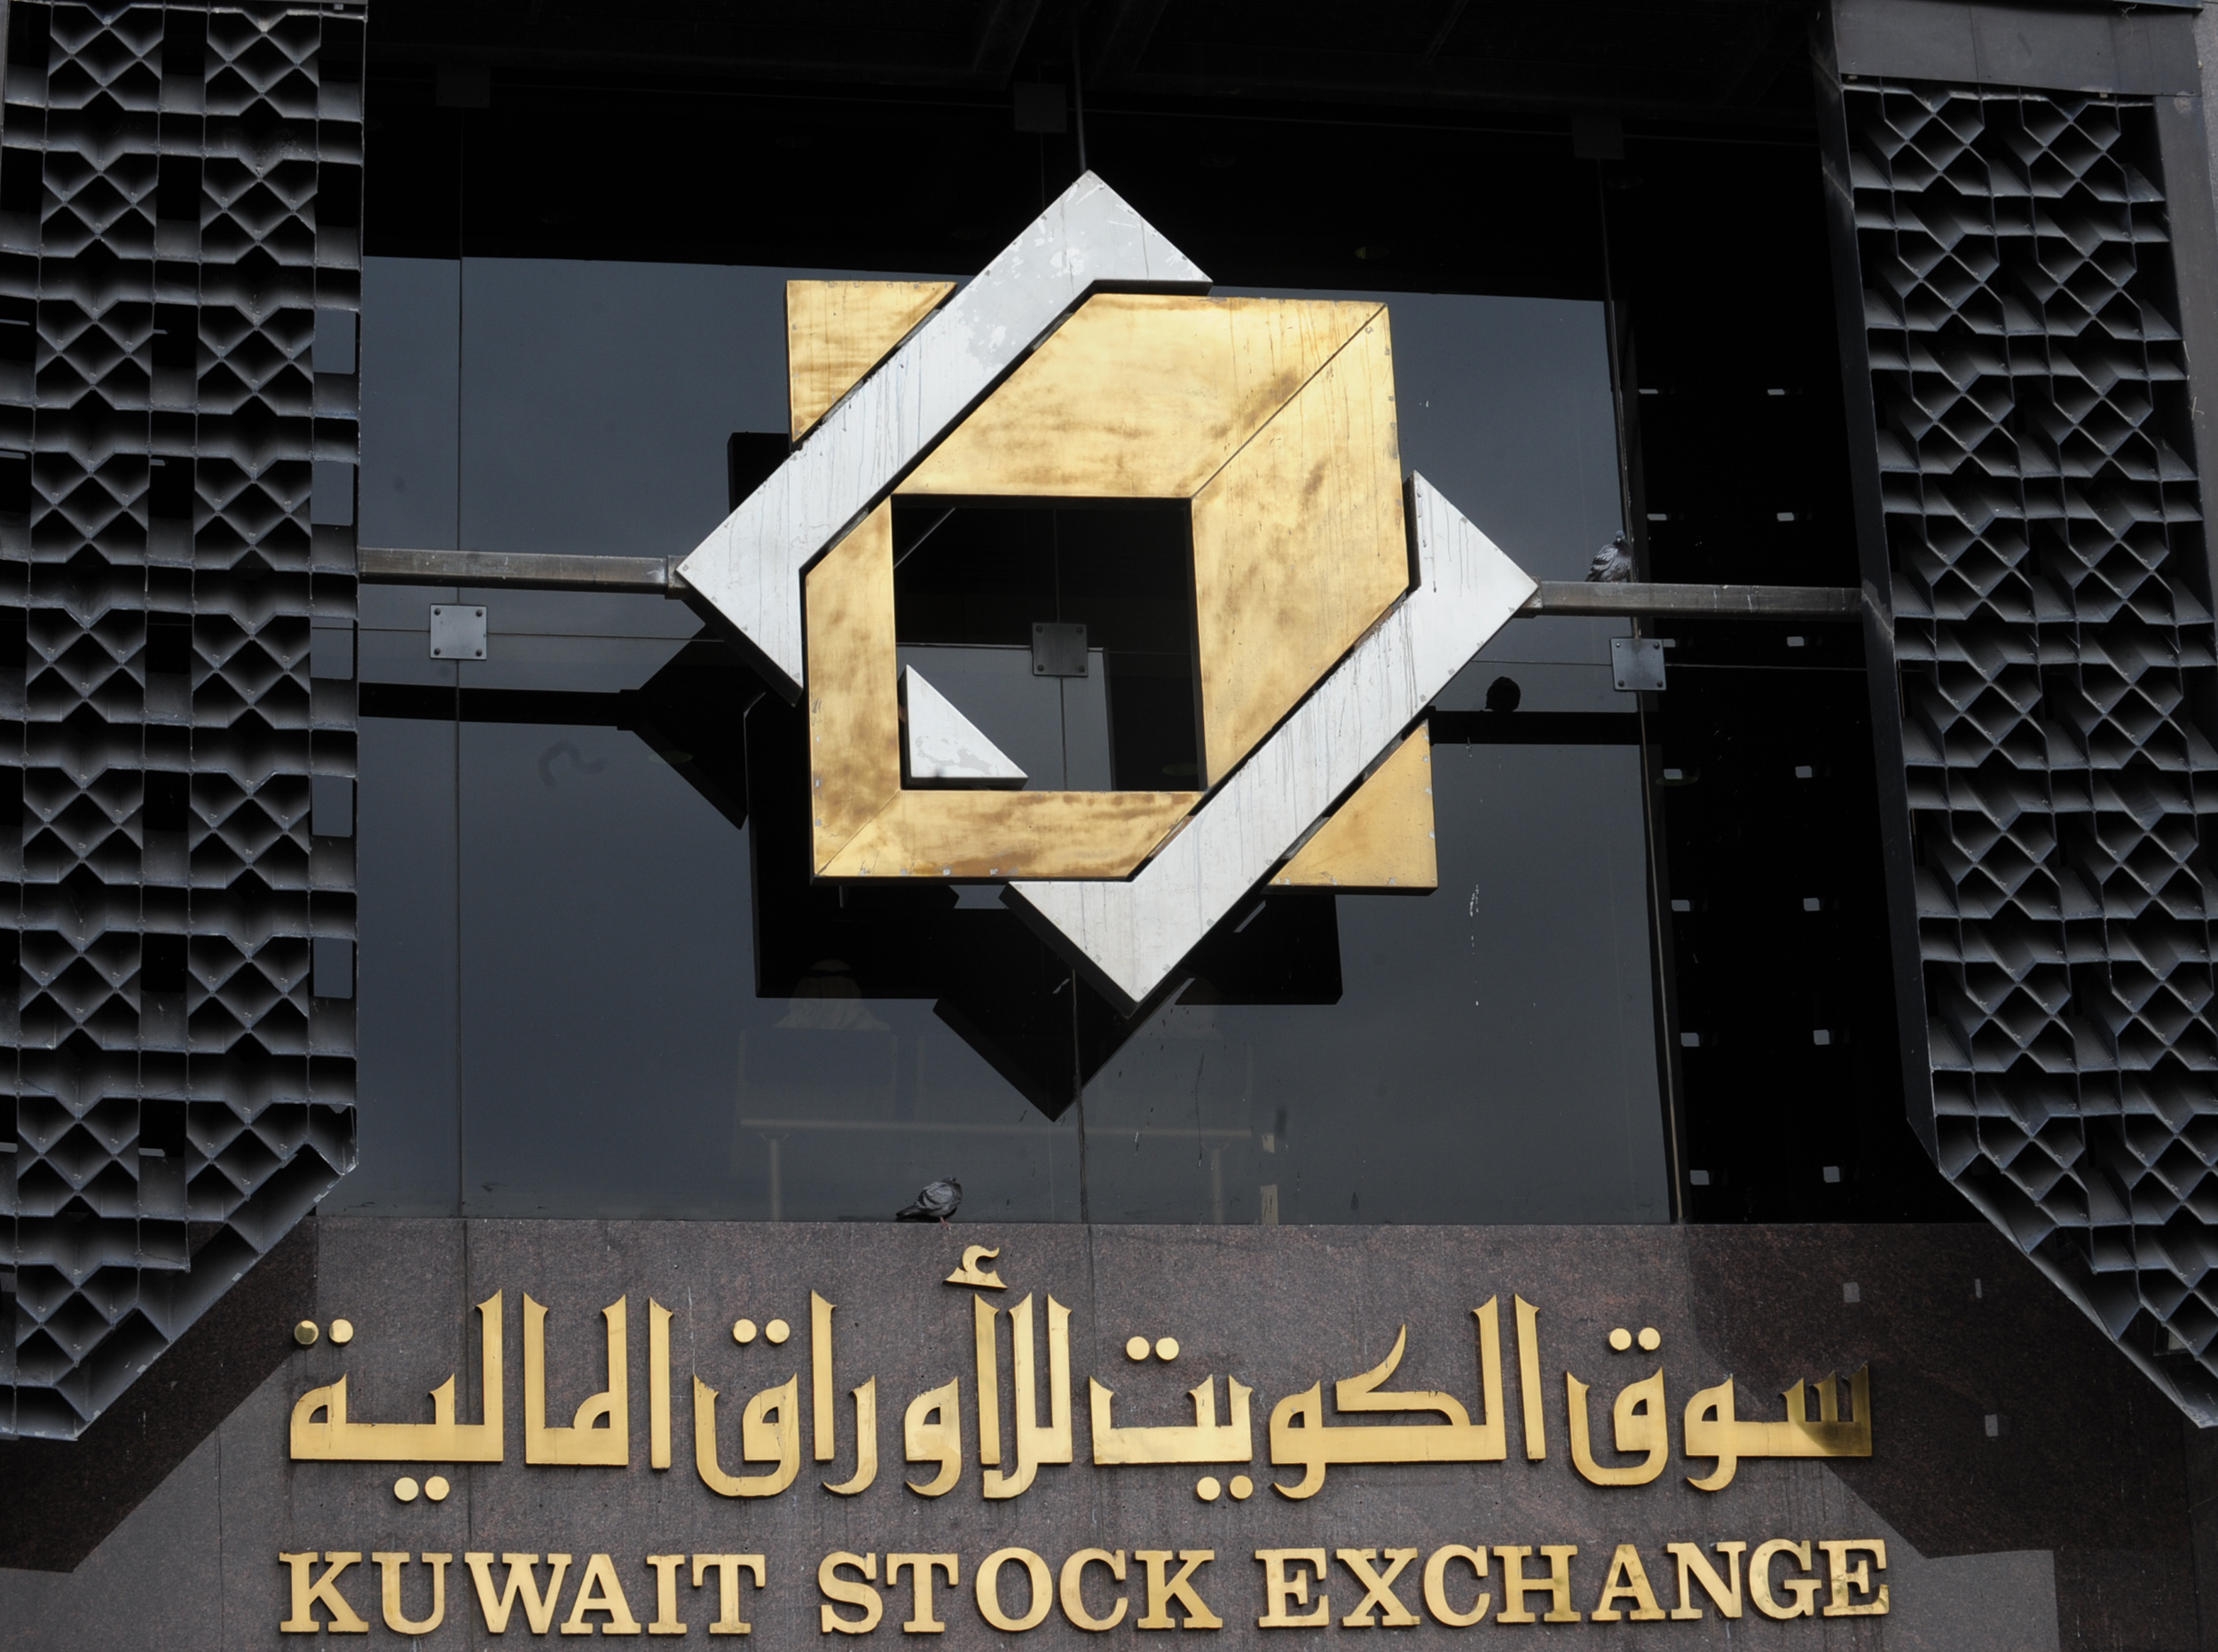 بورصة الكويت تغلق على ارتفاع مؤشراتها الرئيسية الثلاثة                                                                                                                                                                                                    